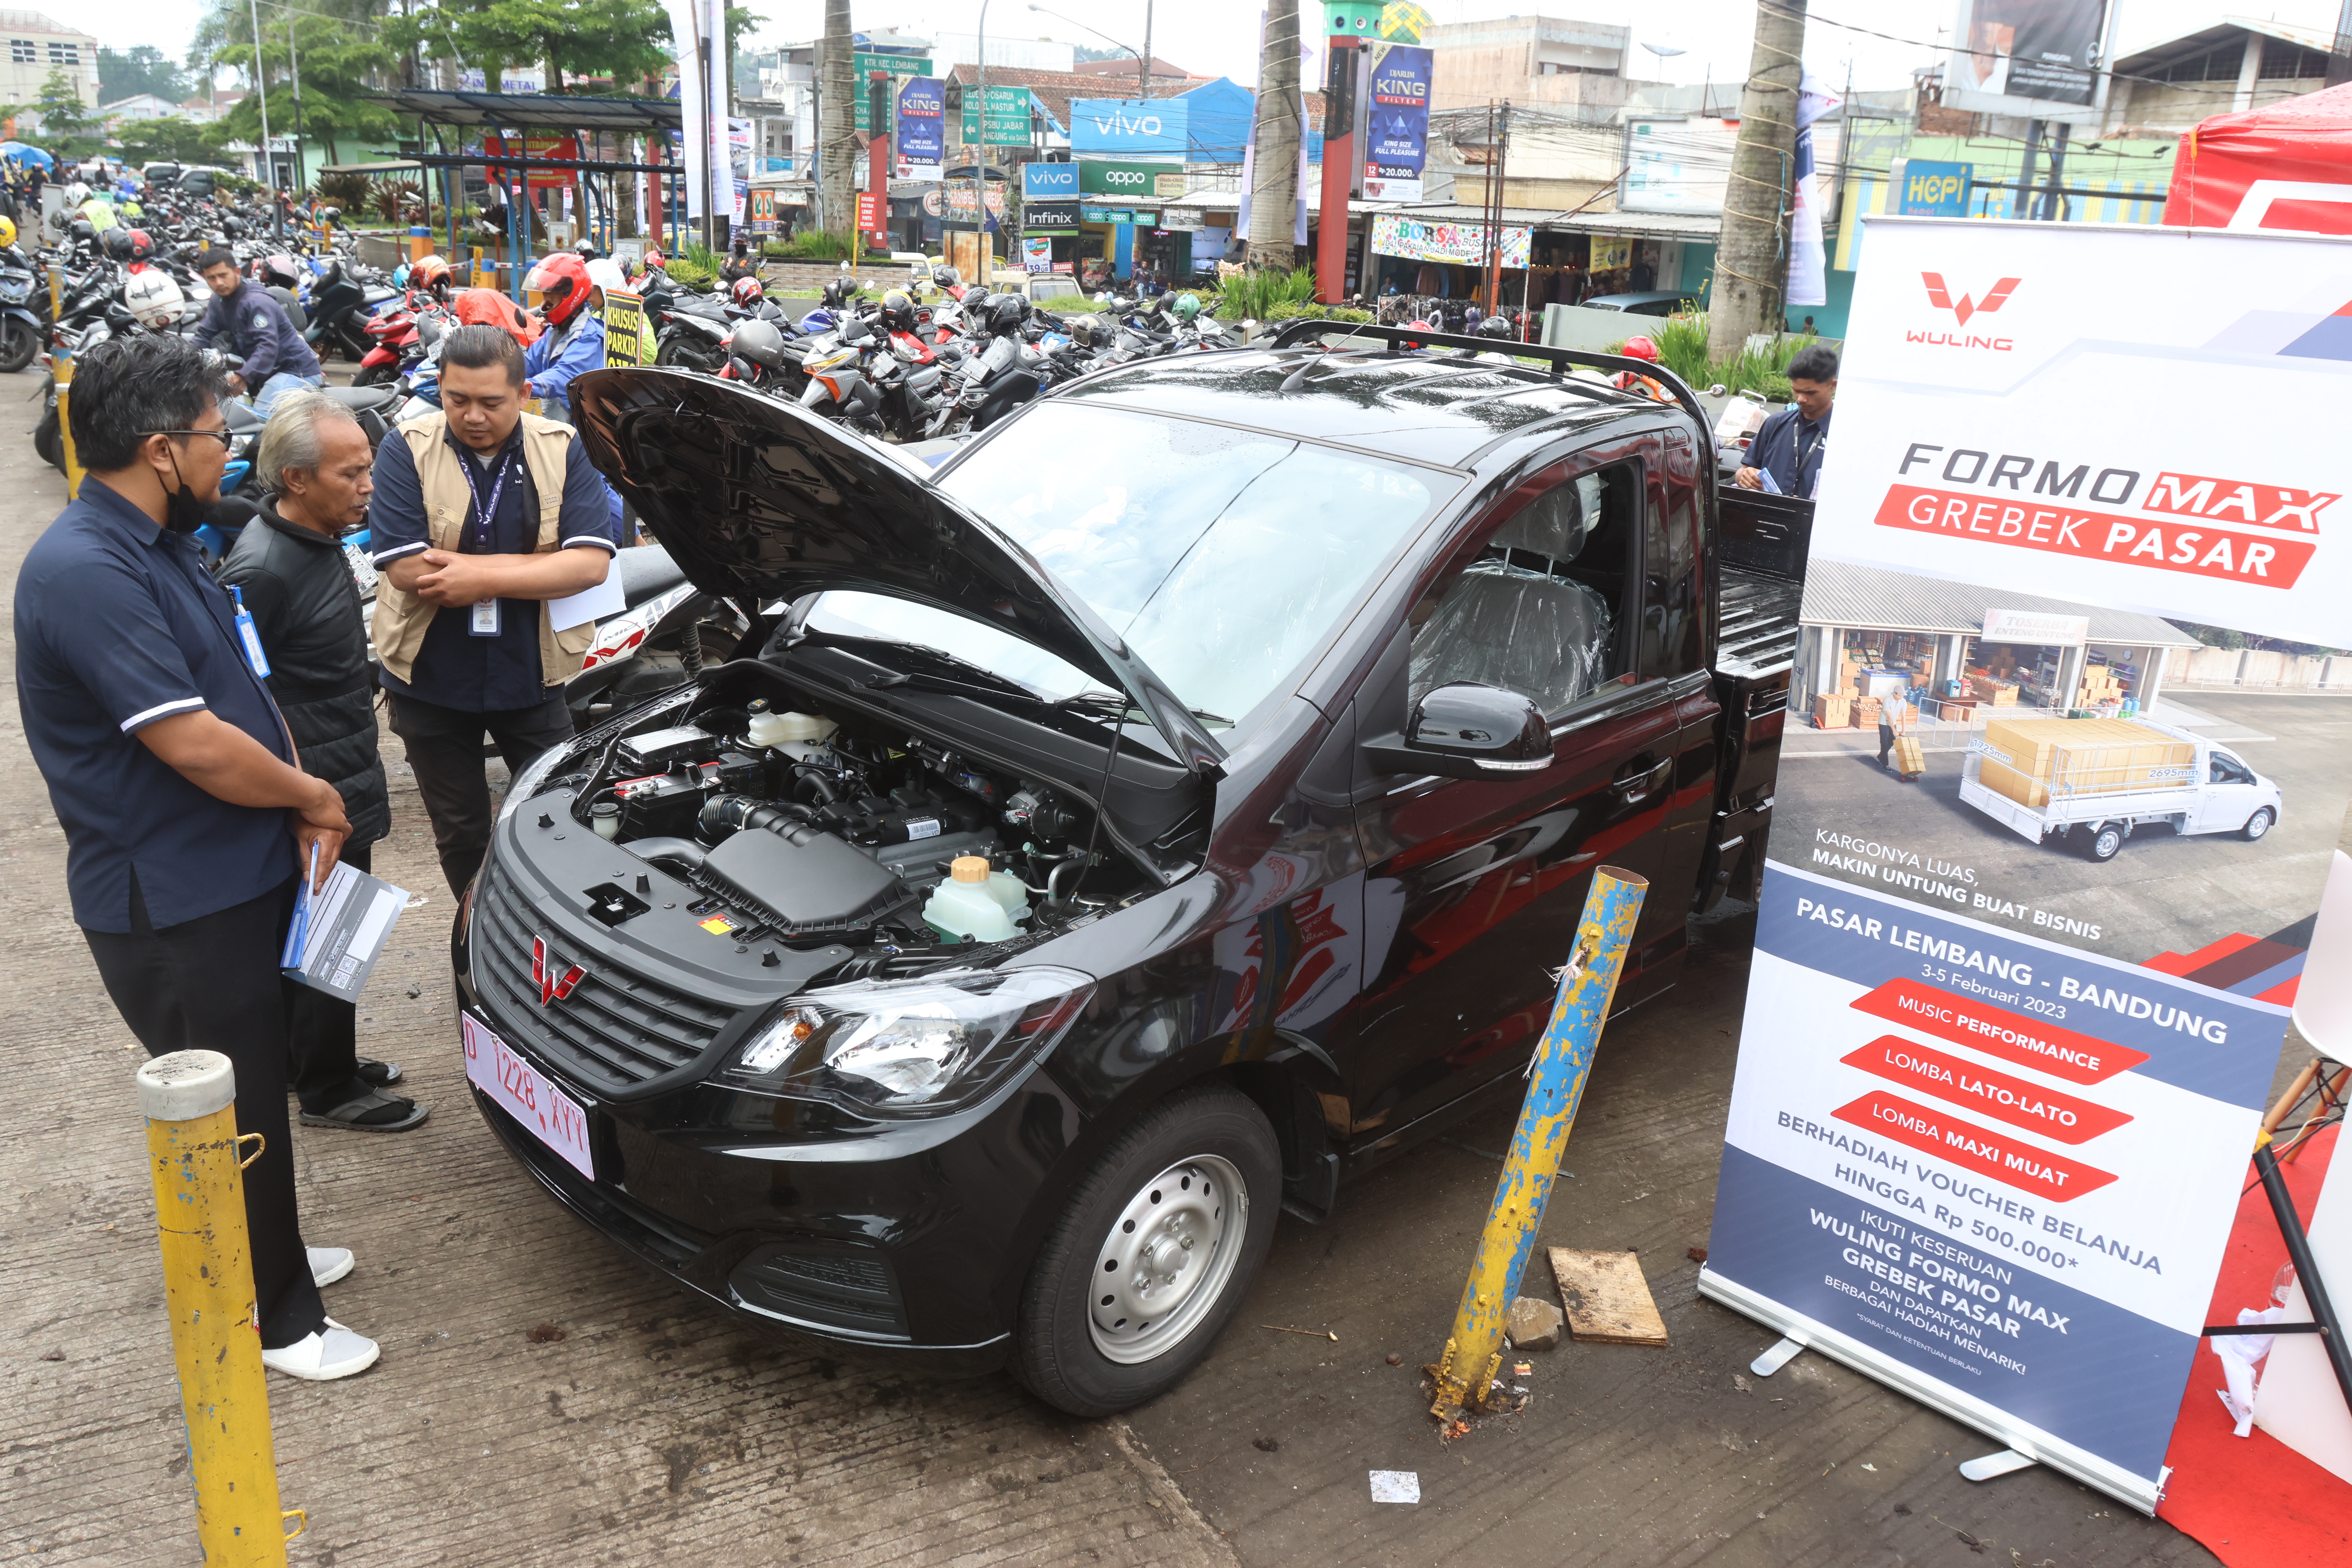 Image Wuling Luncurkan Formo Max di Bandung dengan Harga Mulai dari Rp167,3 Juta